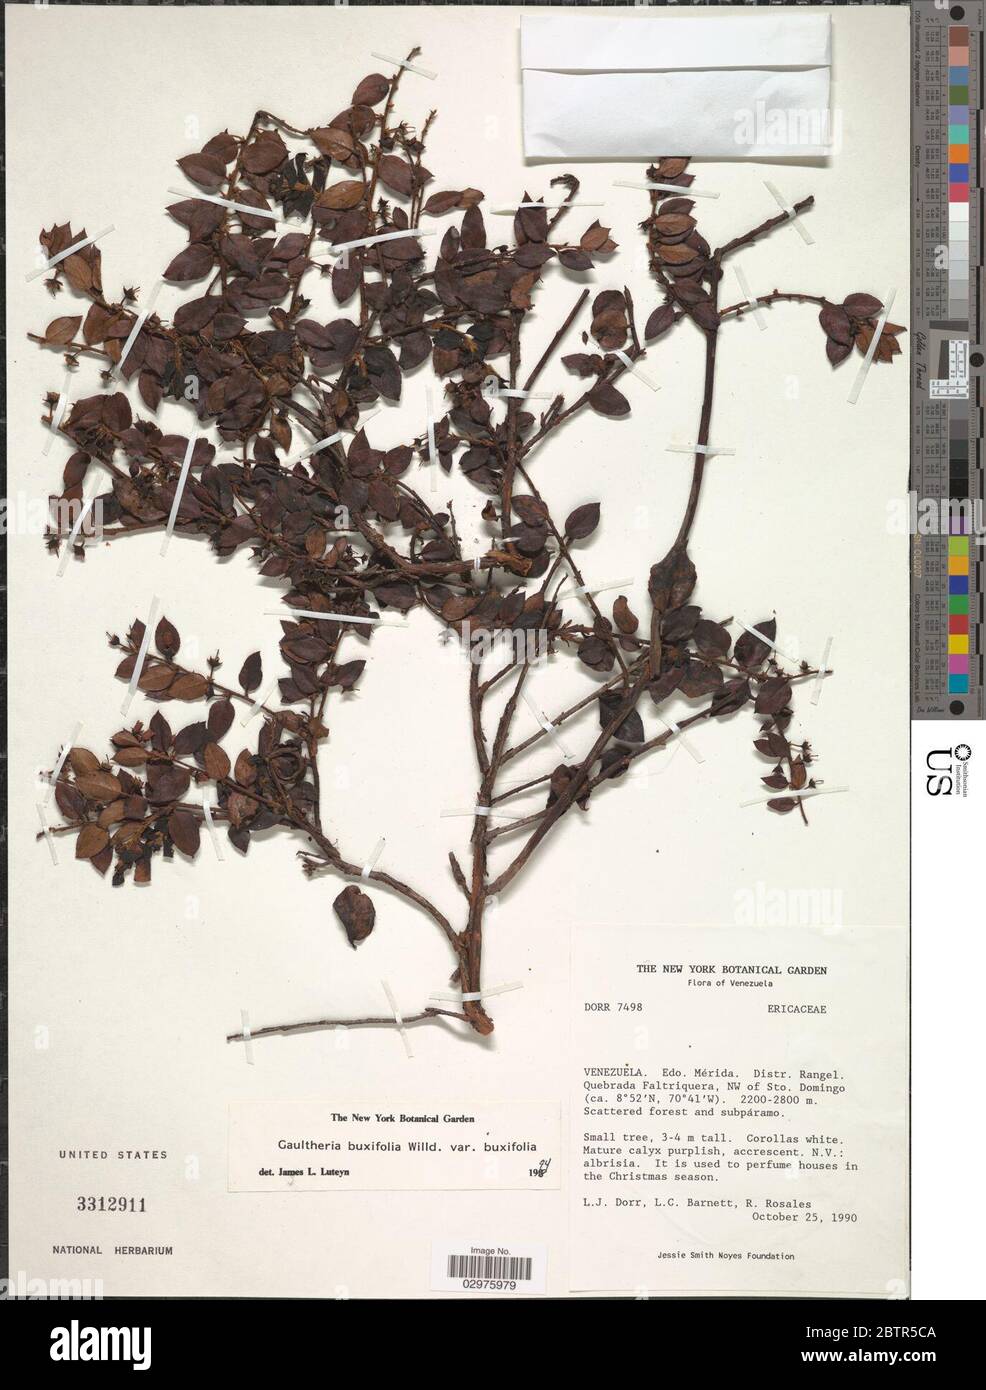 Gaultheria buxifolia Willd. Stock Photo